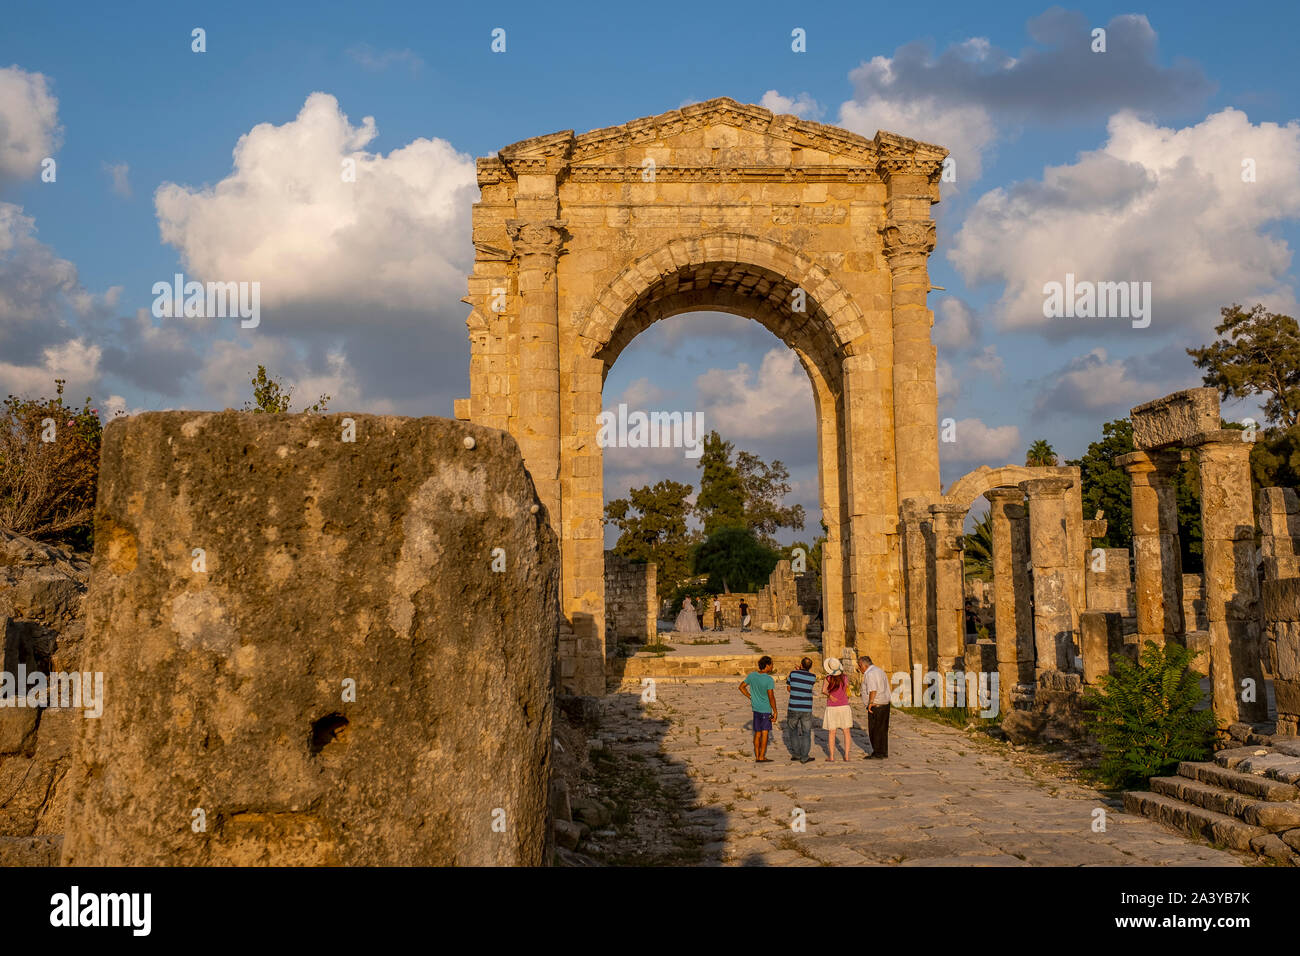 Arco trionfale, in Al-Bass sito archeologico, pneumatico (Sour), il Libano. Foto Stock